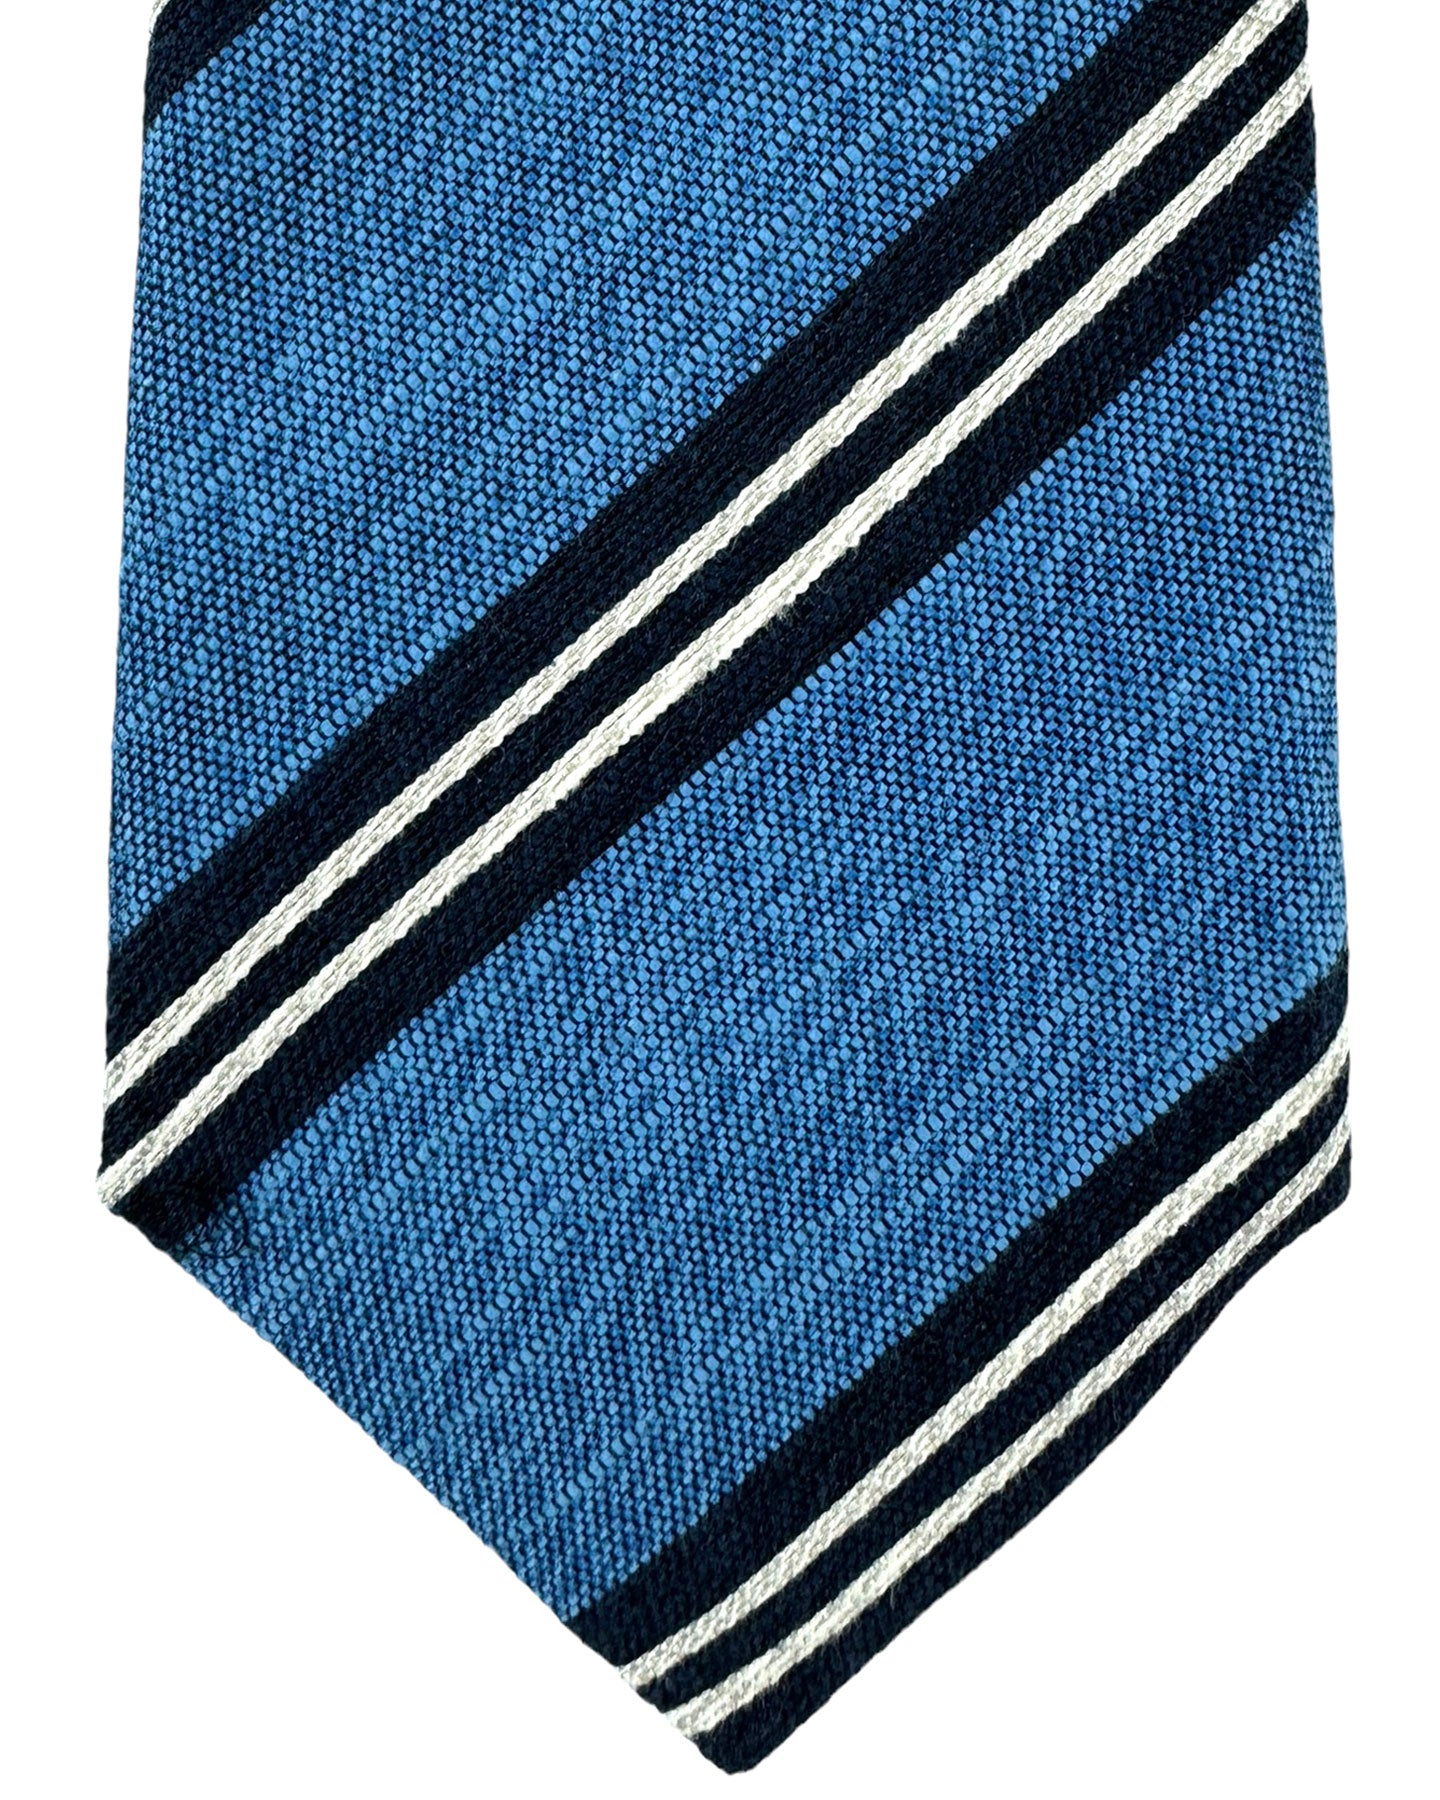 Canali Silk Tie Blue Dark Blue Stripes Pattern - Classic Italian